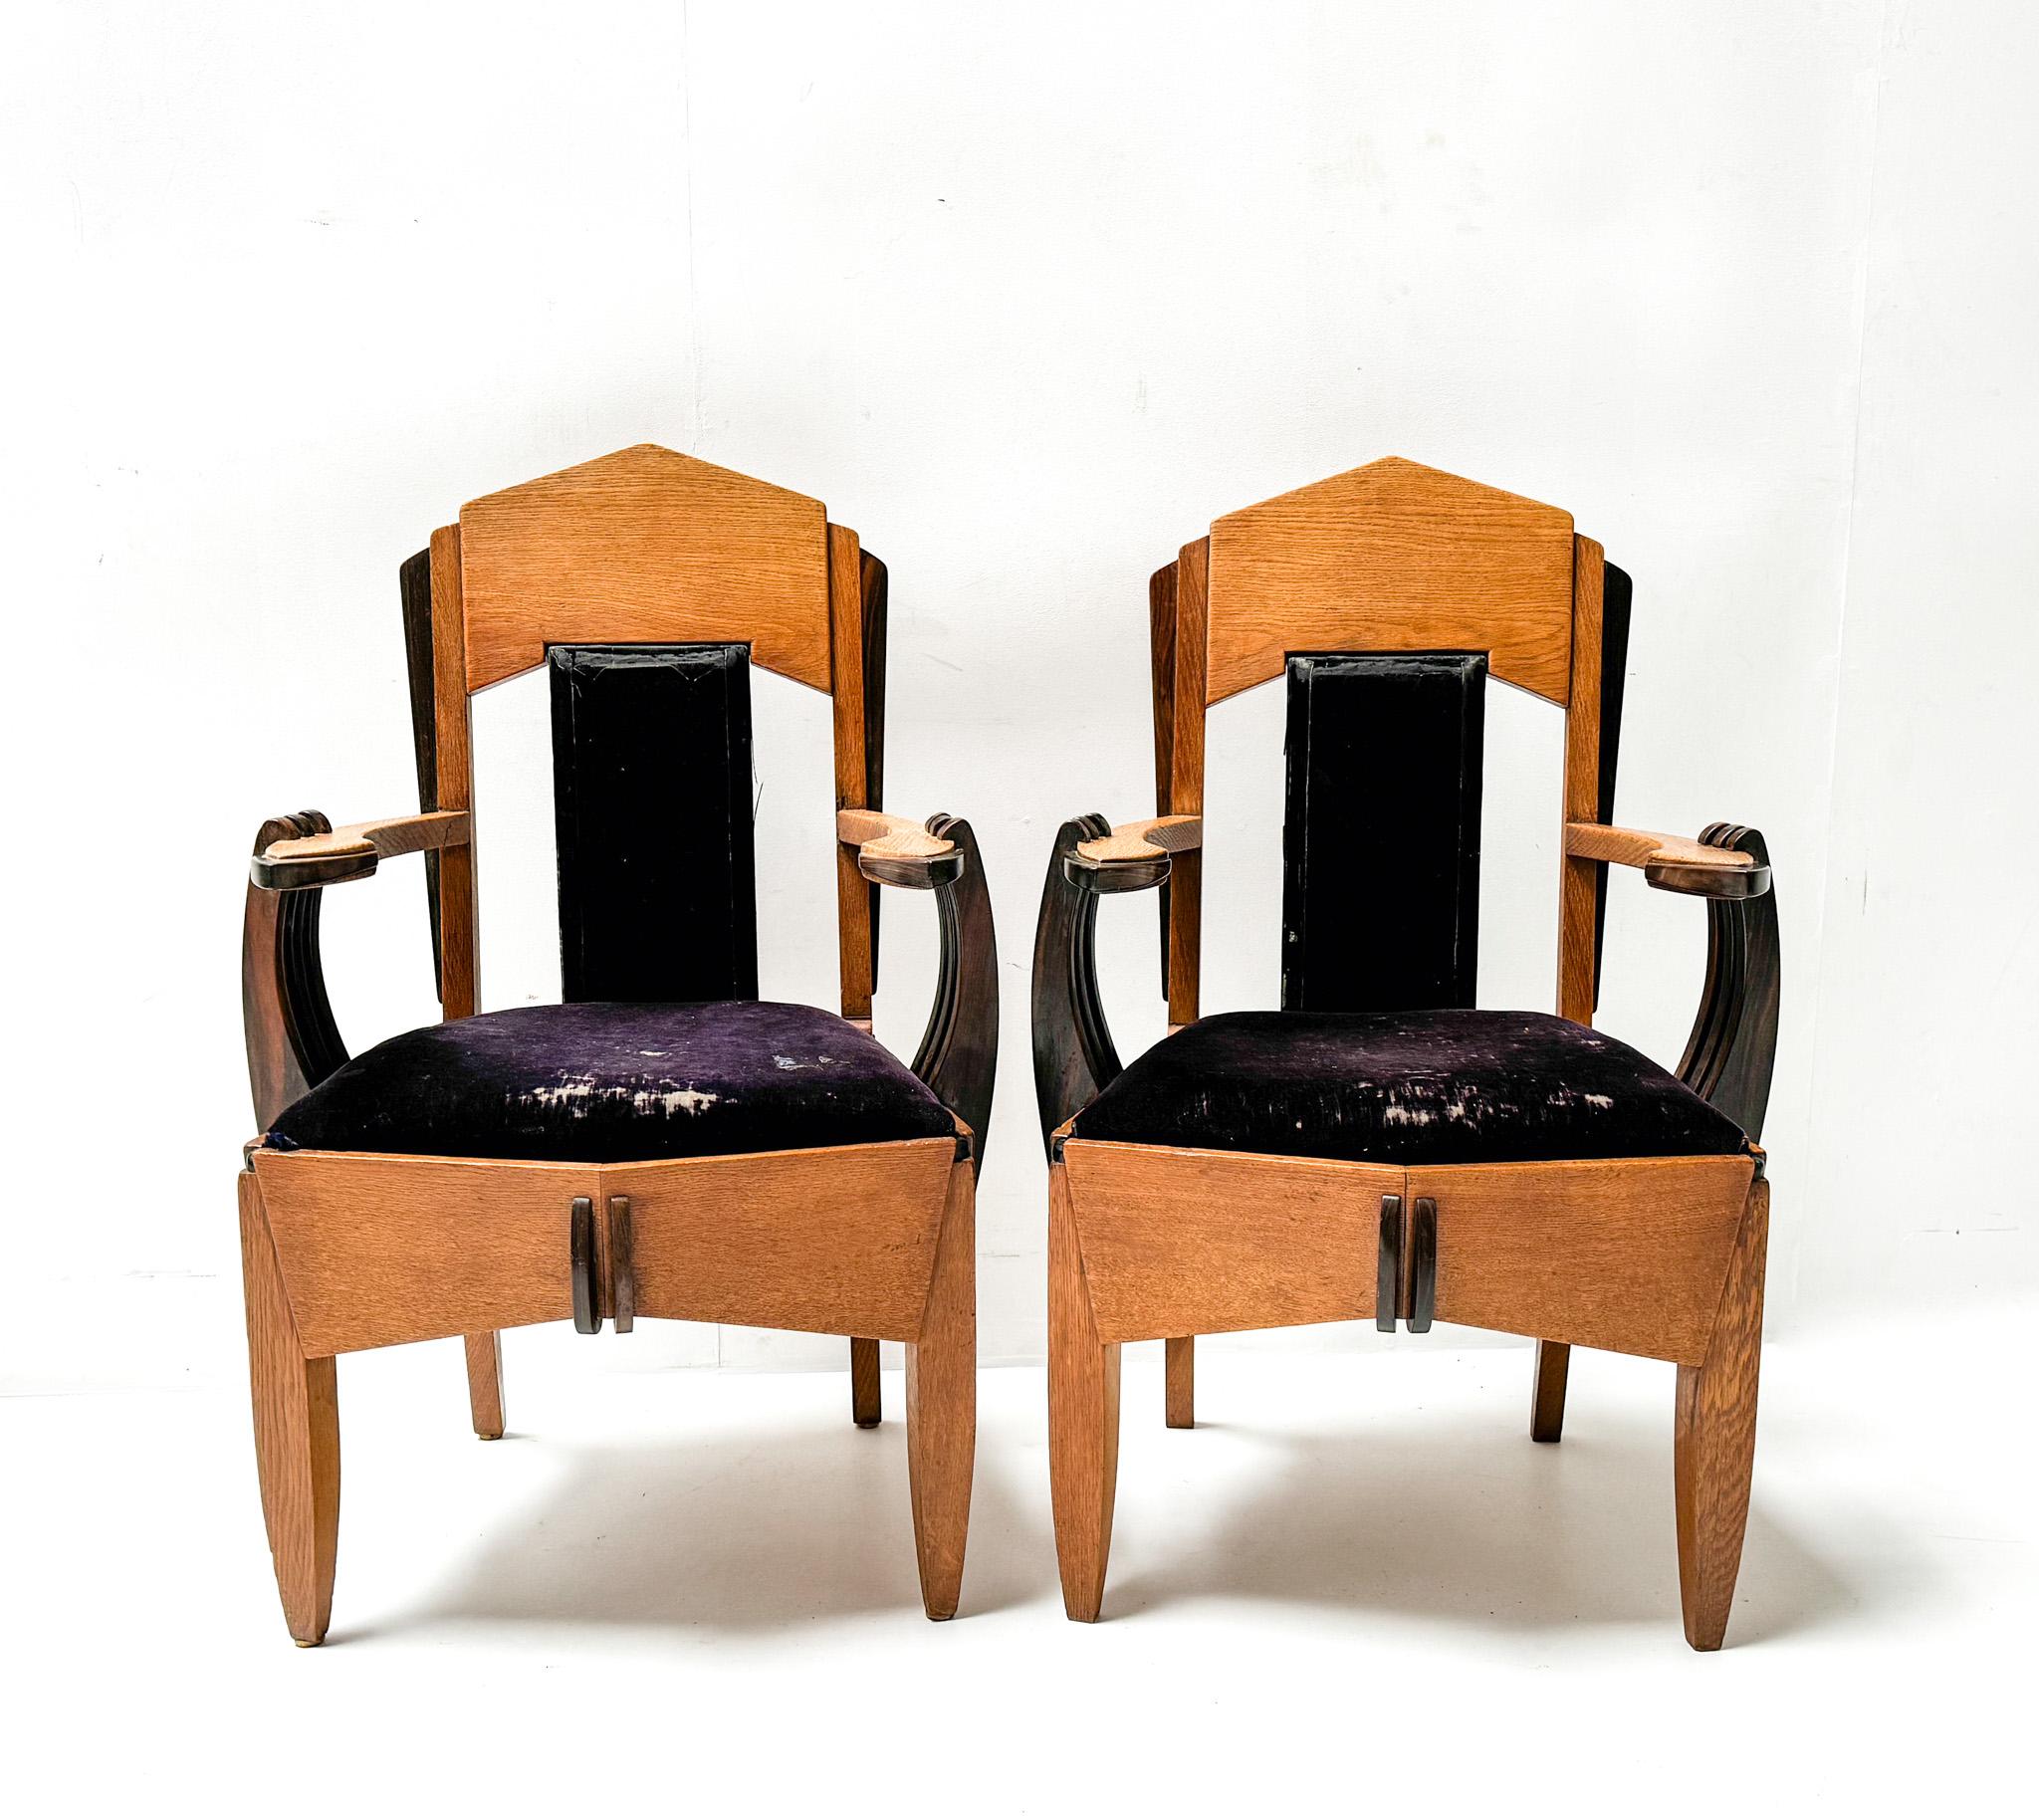 Wunderschönes und sehr seltenes Paar Art Deco Amsterdamse School Sessel.
Entwurf von Hildo Krop.
Auffälliges niederländisches Design aus den 1920er Jahren.
Massive Eichenholzrahmen mit originalen Elementen aus massivem Makassar-Ebenholz.
Die beiden